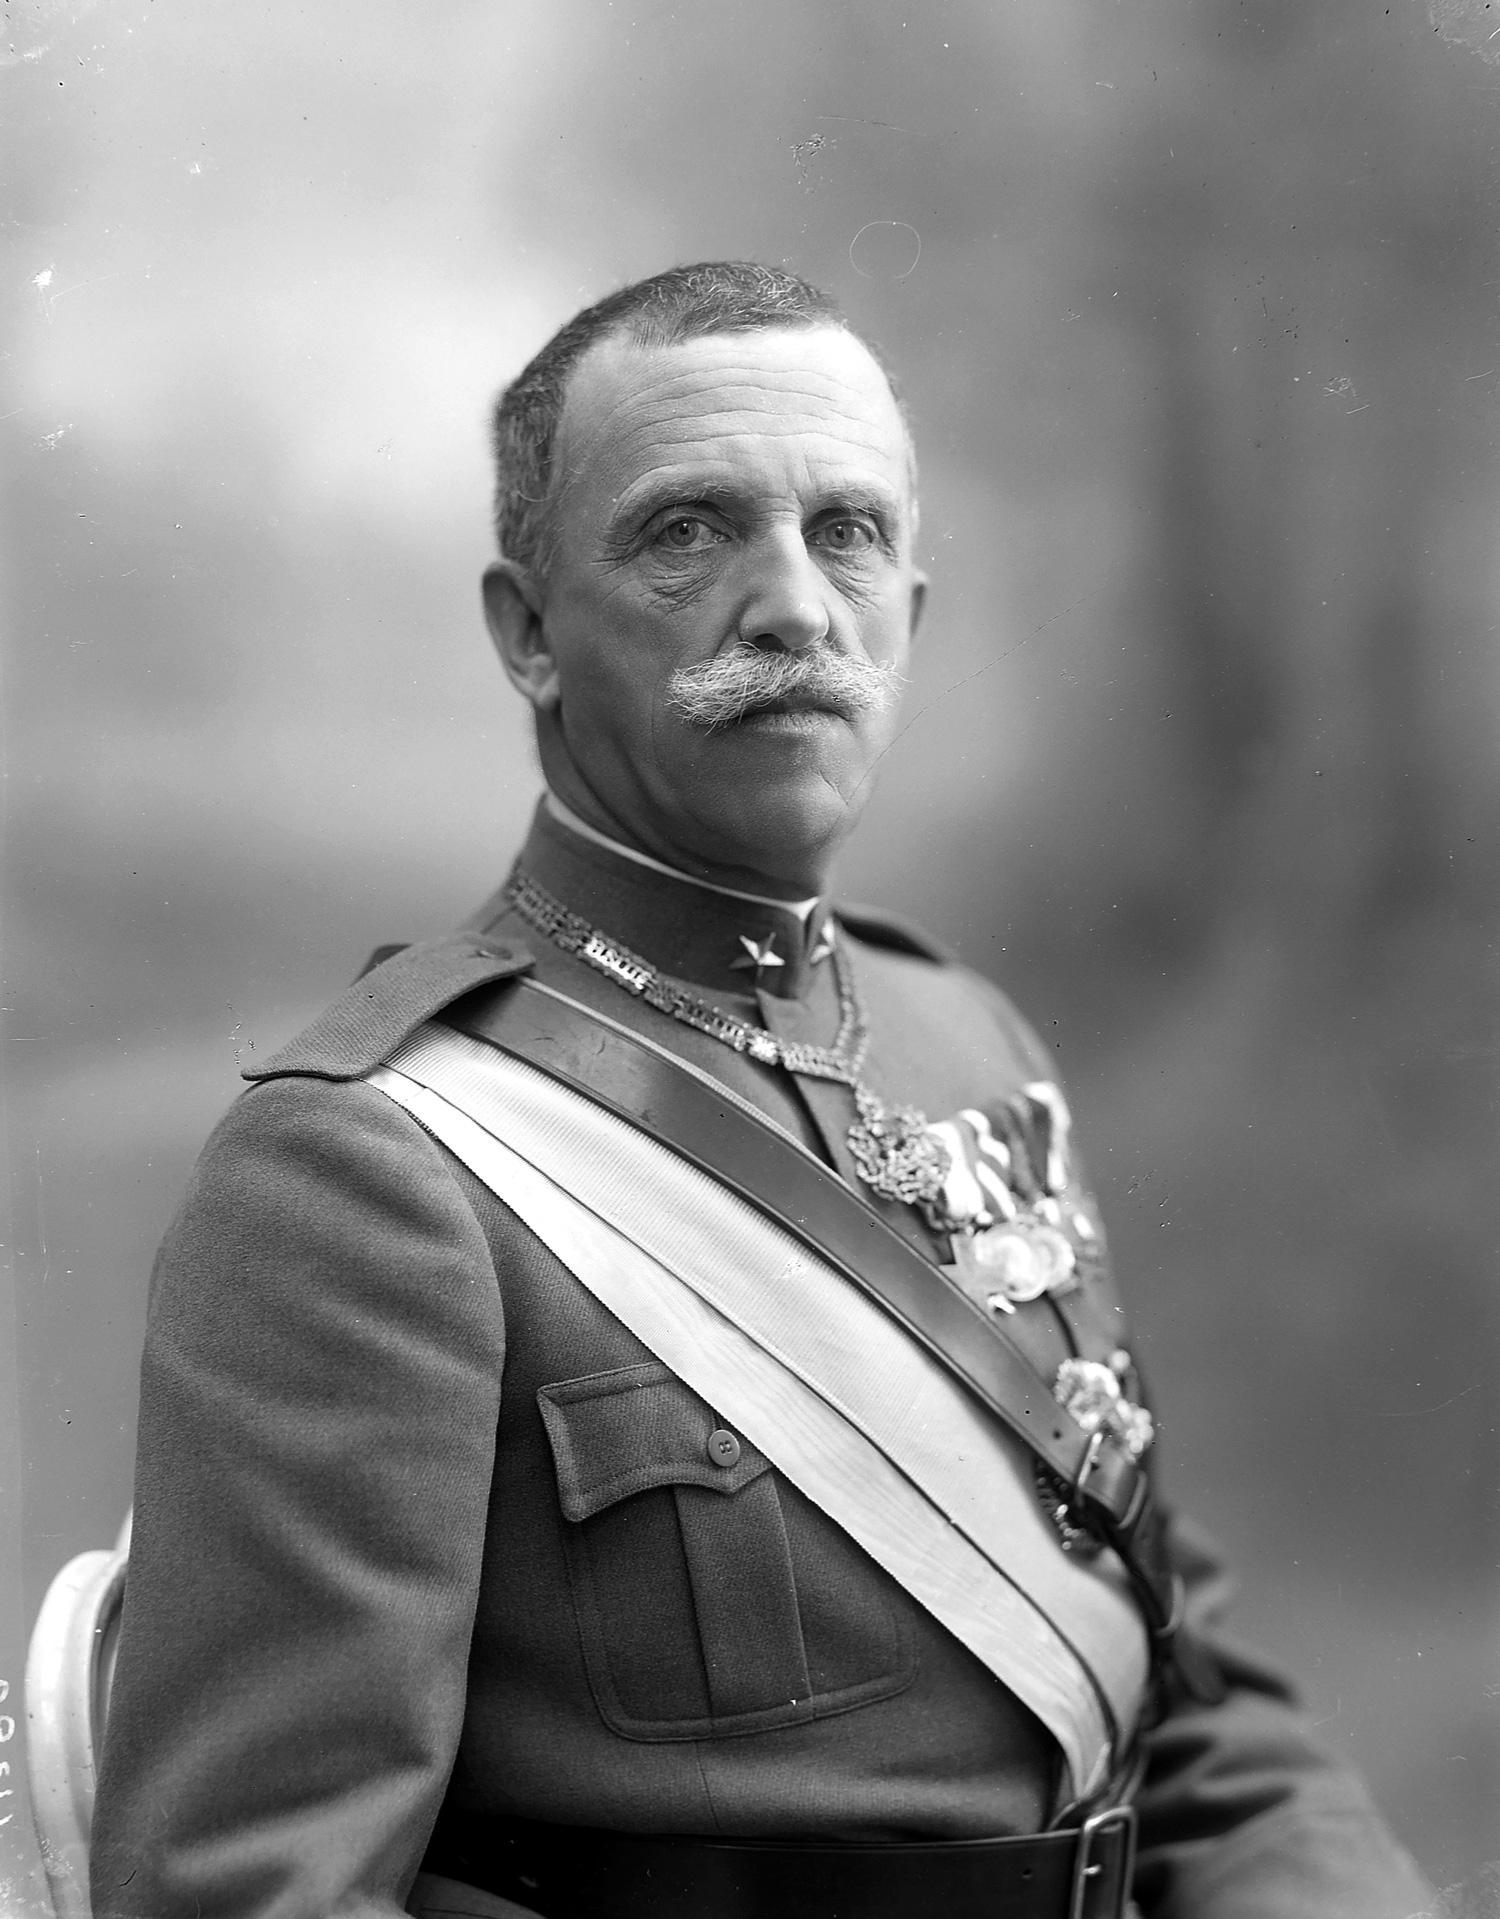 Ritratto di Vittorio Emanuele III di Savoia, re d'Italia (1900-1946)
